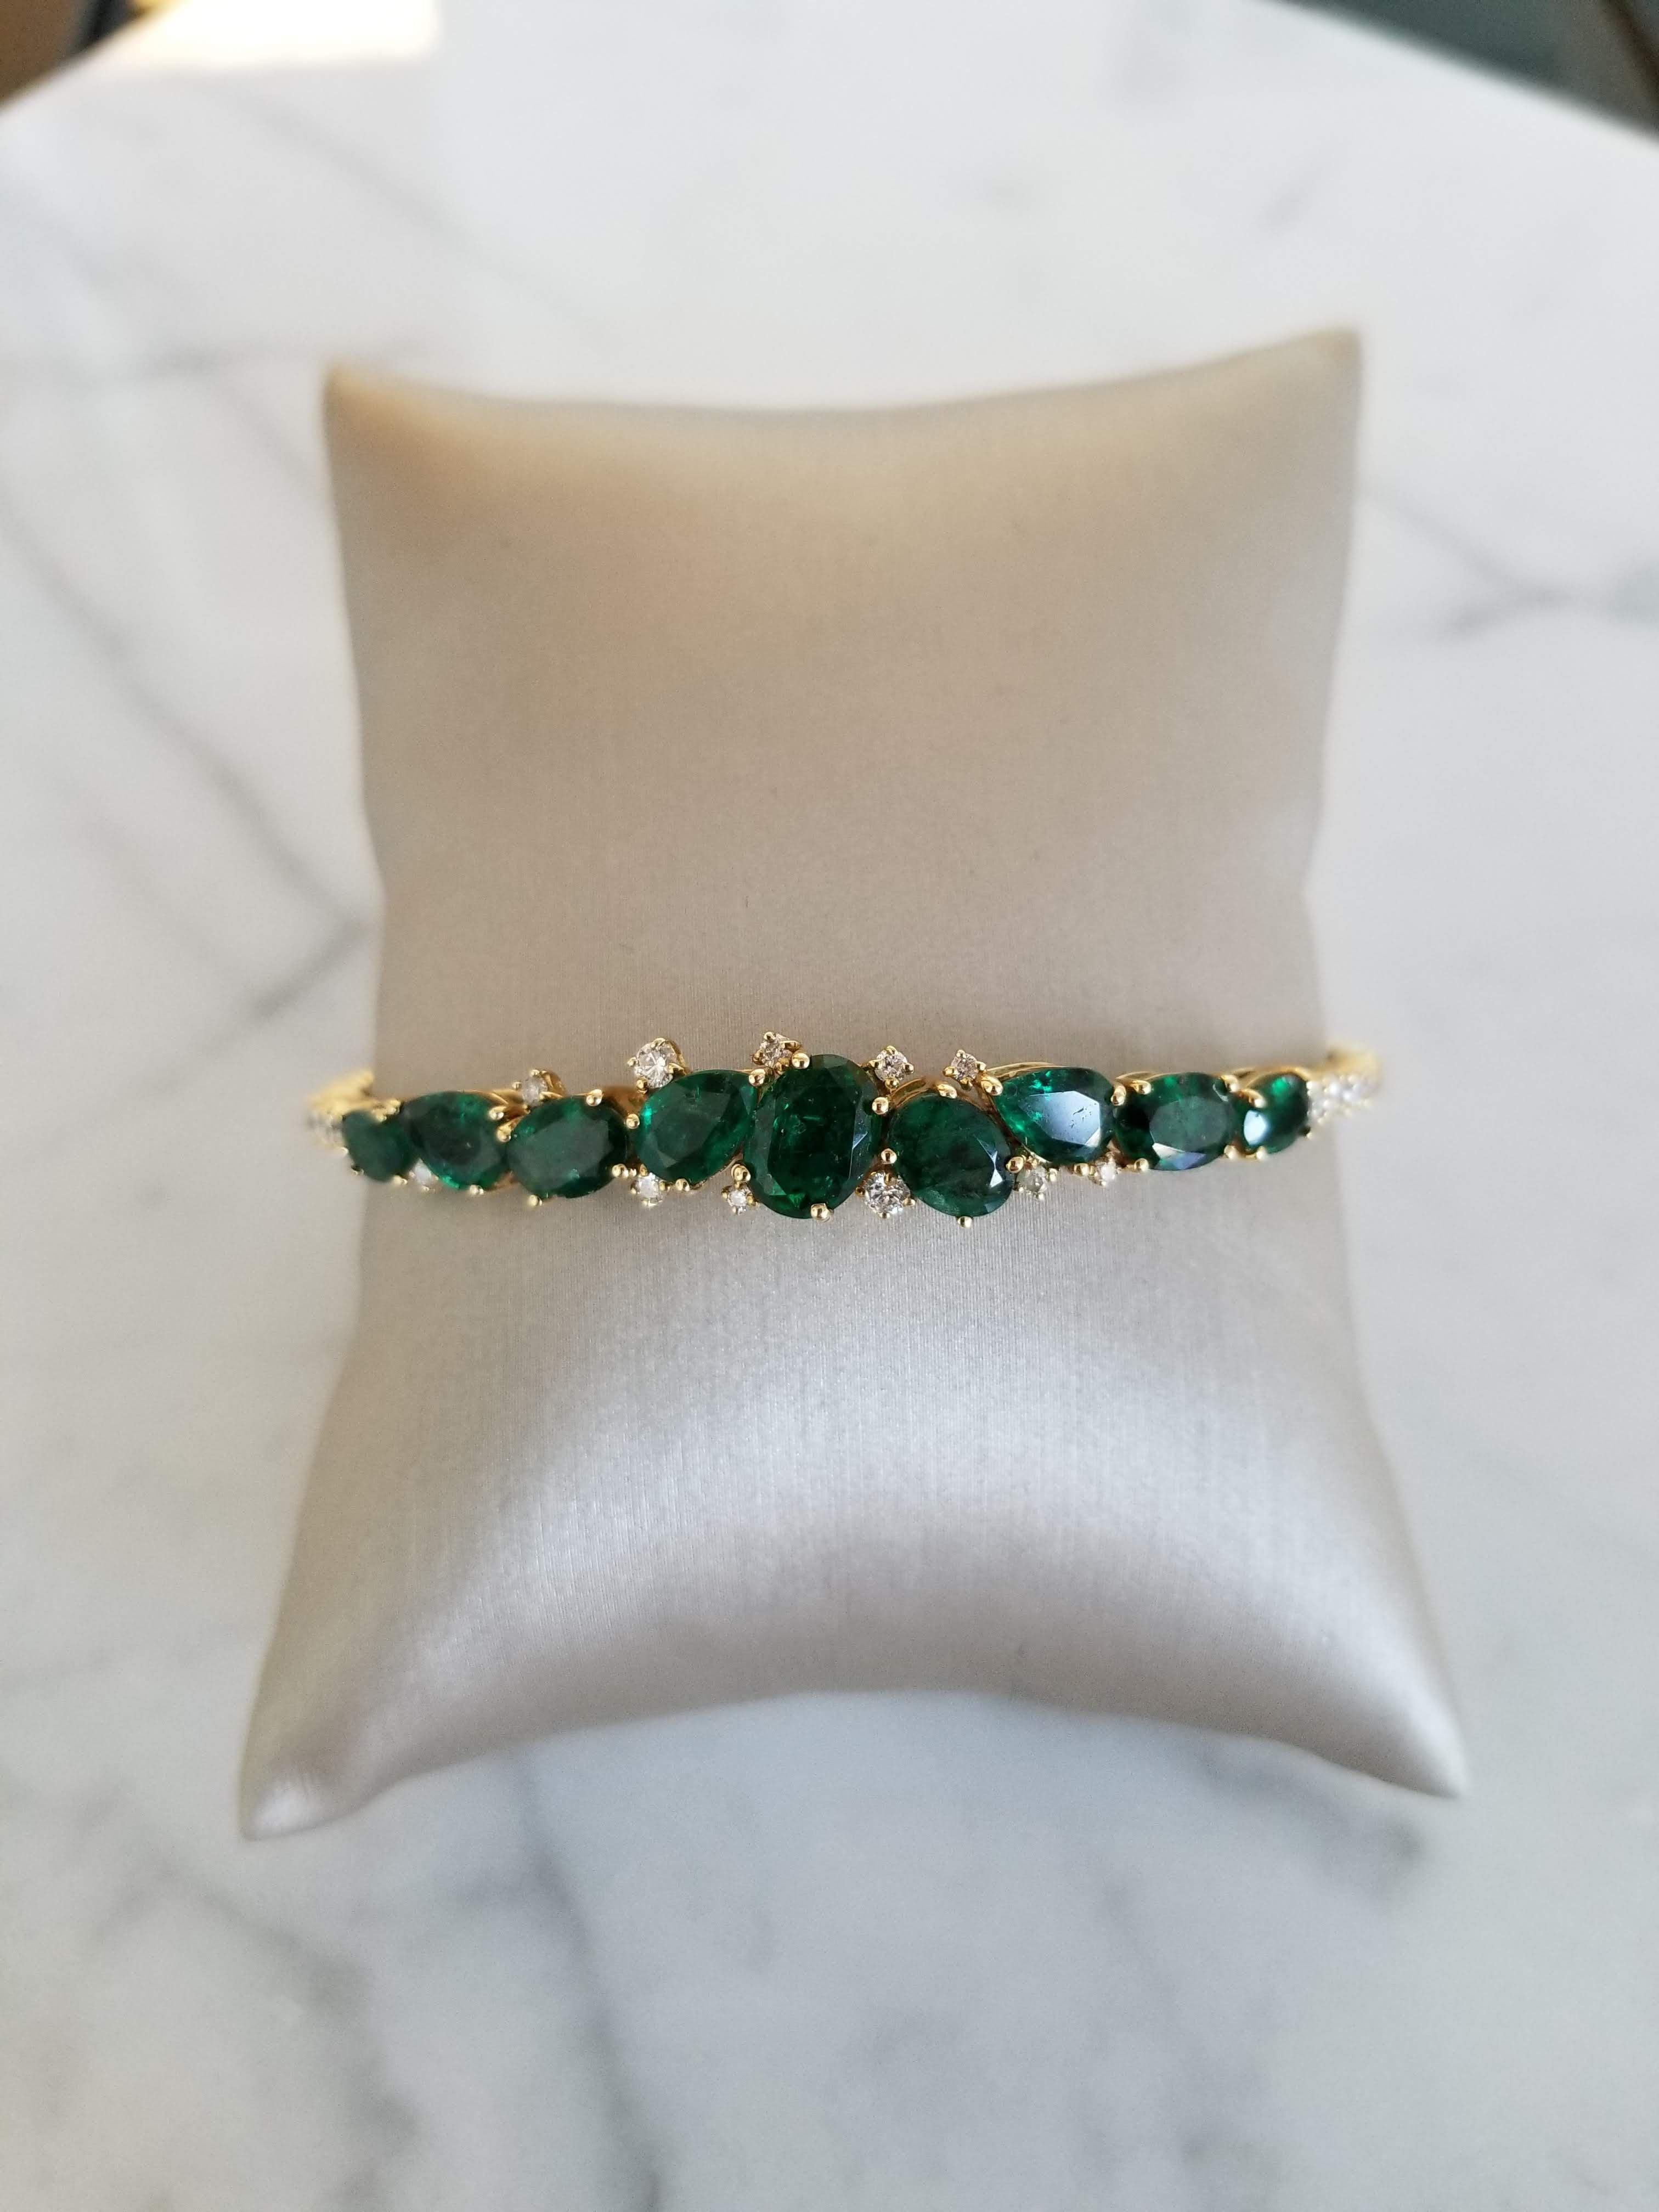 Bracelet flexible de diamants et d'émeraudes vertes qui peut être habillé ou non ! 
Tombez amoureux de cette belle pièce !